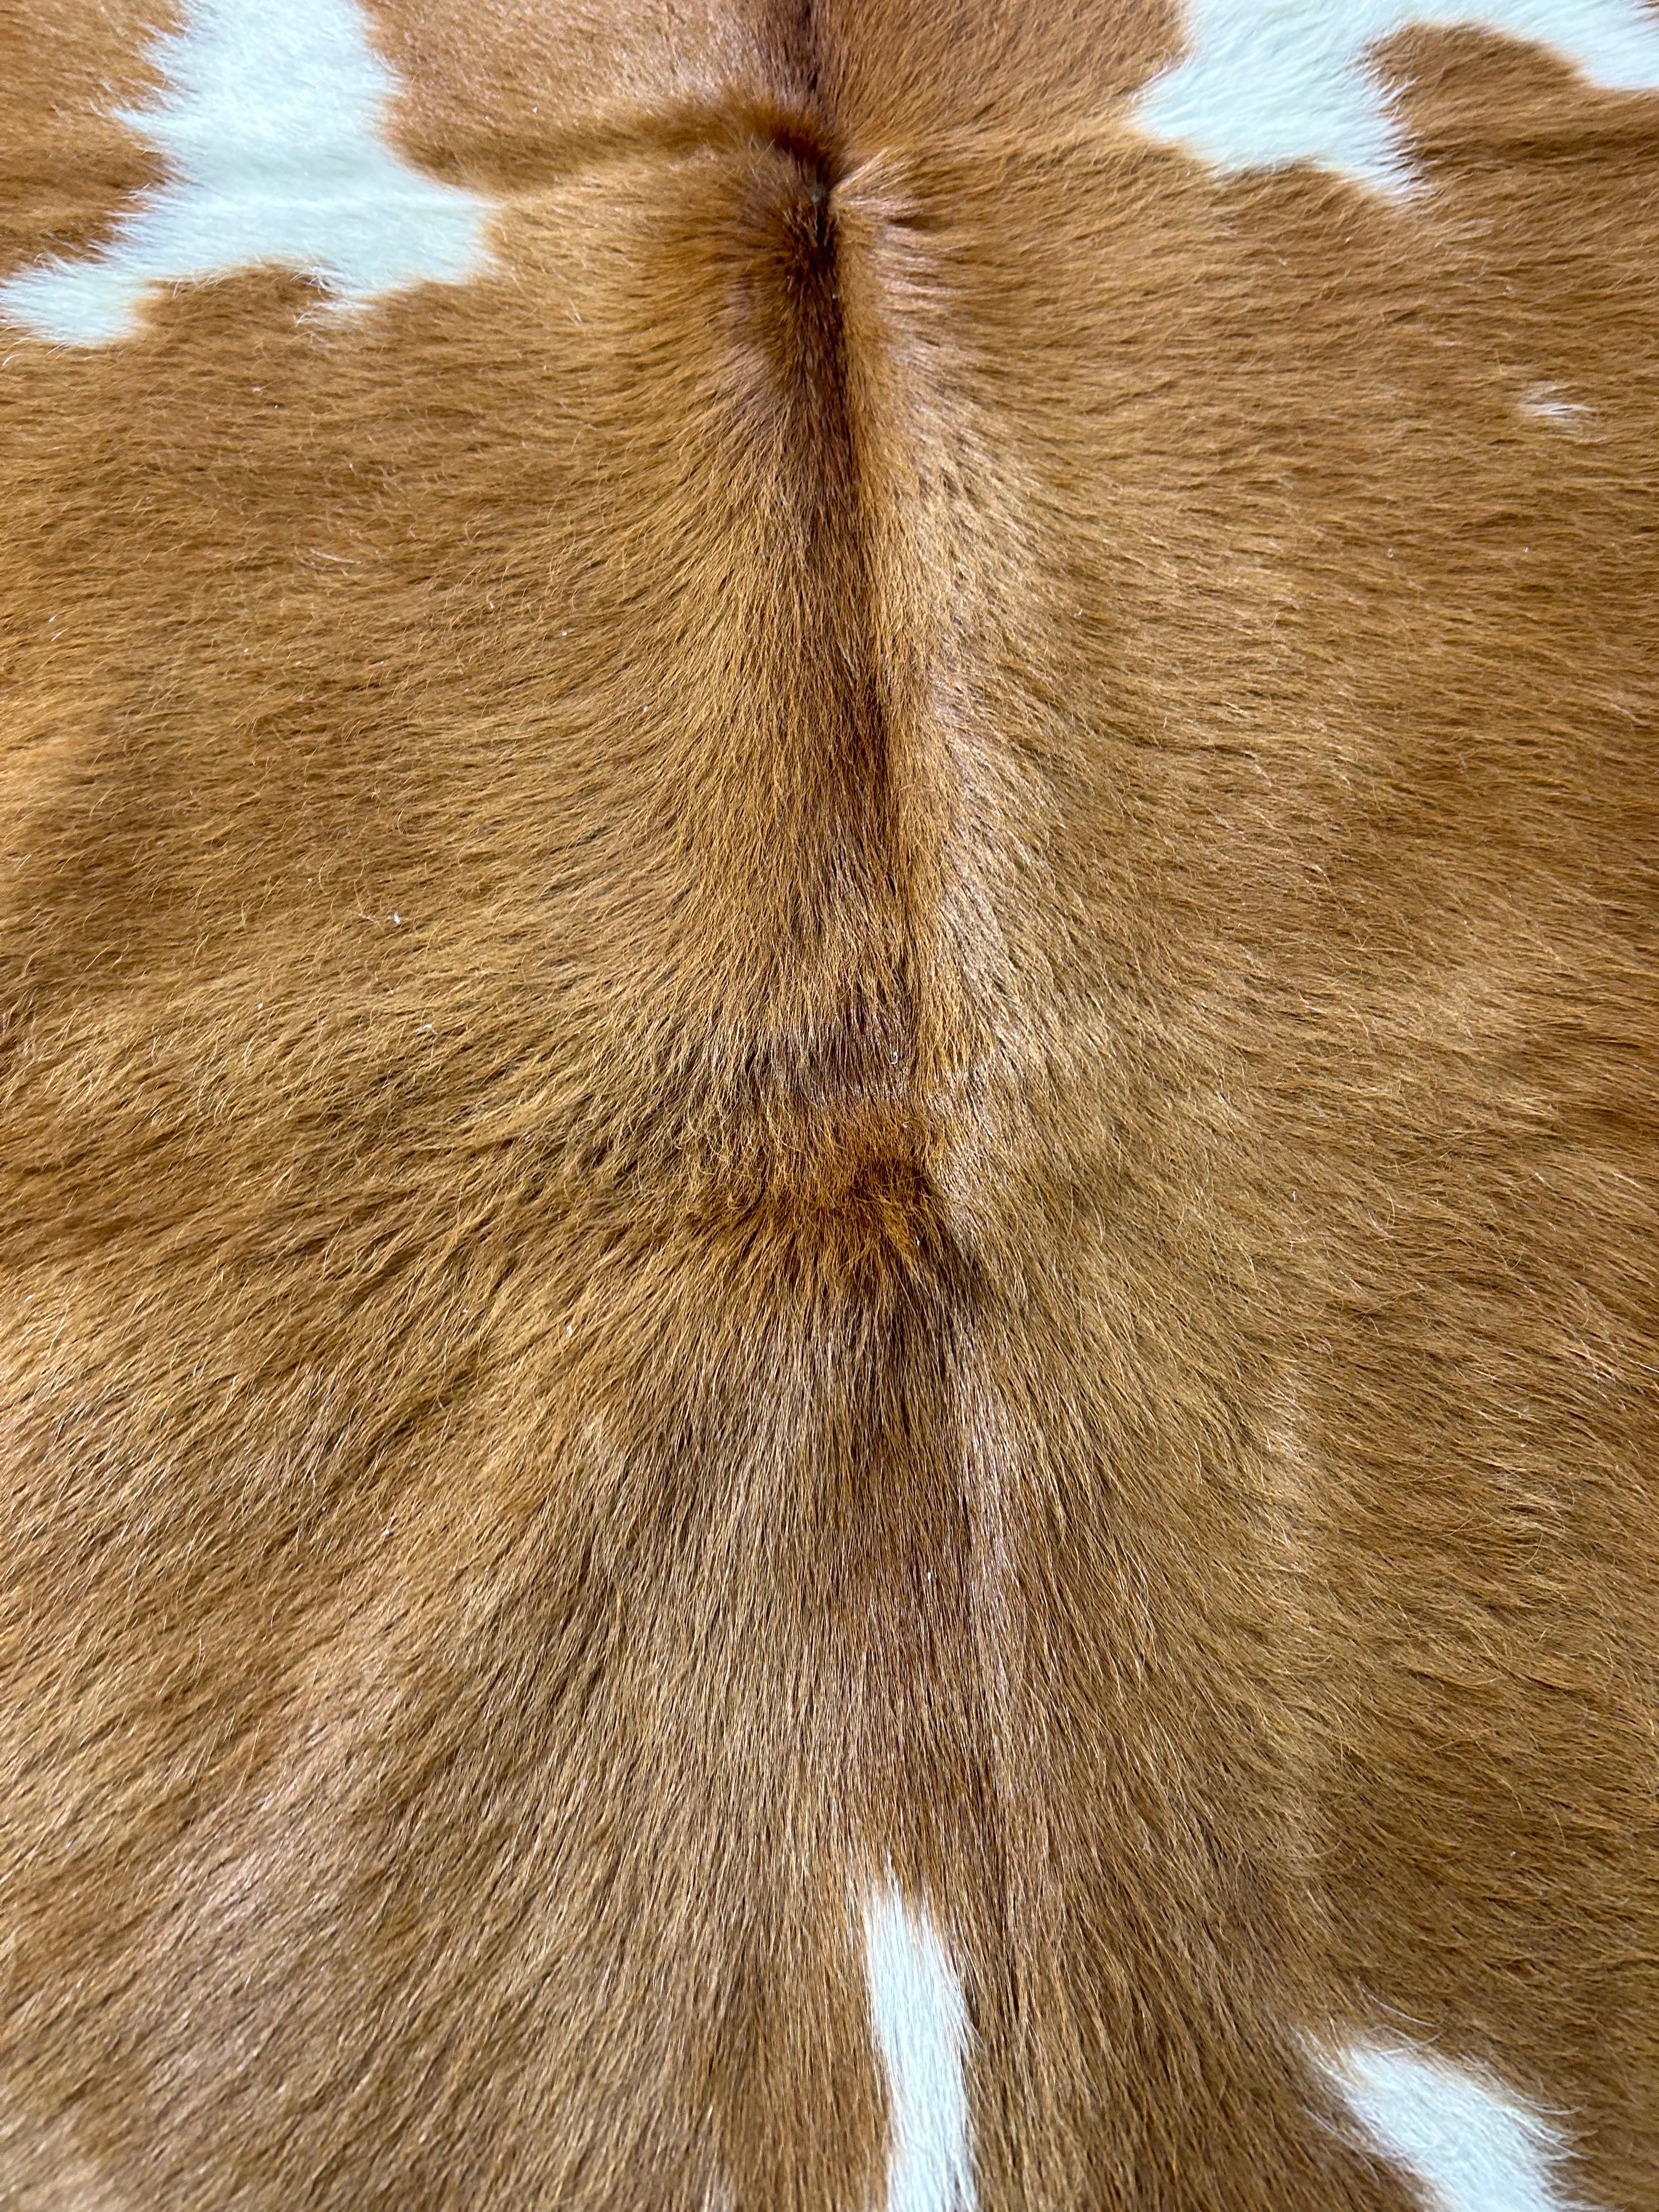 Brown & White Cowhide Rug Size: 6x6 feet M-1684